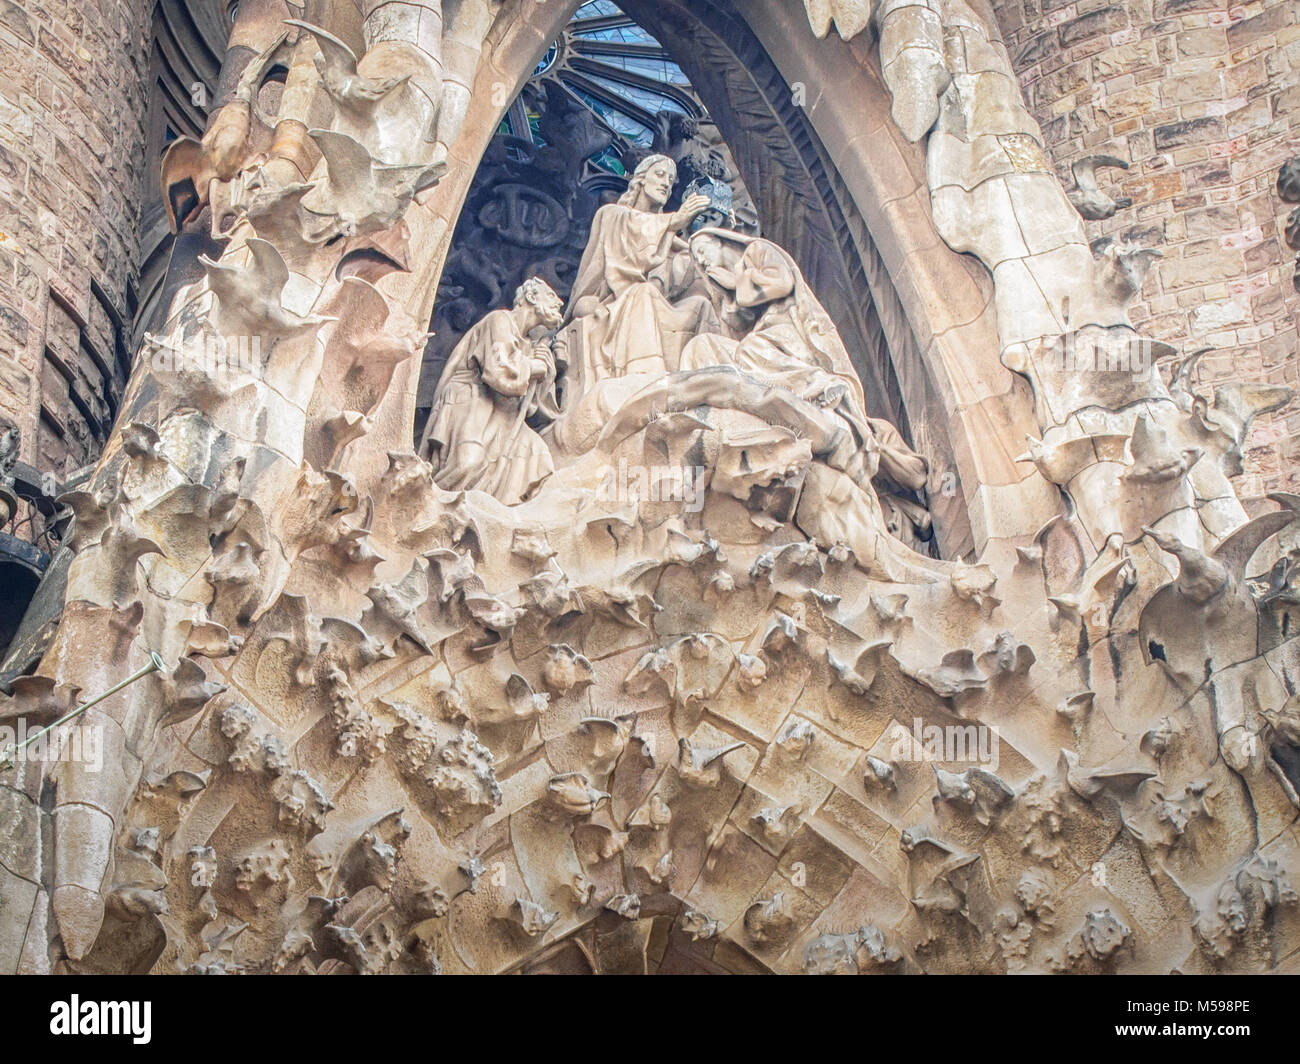 Barcellona, Spagna-febbraio 16, 2018: Jesusu Cristo come un frammento architettonico della Sagrada Familia - cattedrale progettata da Gaudi Foto Stock